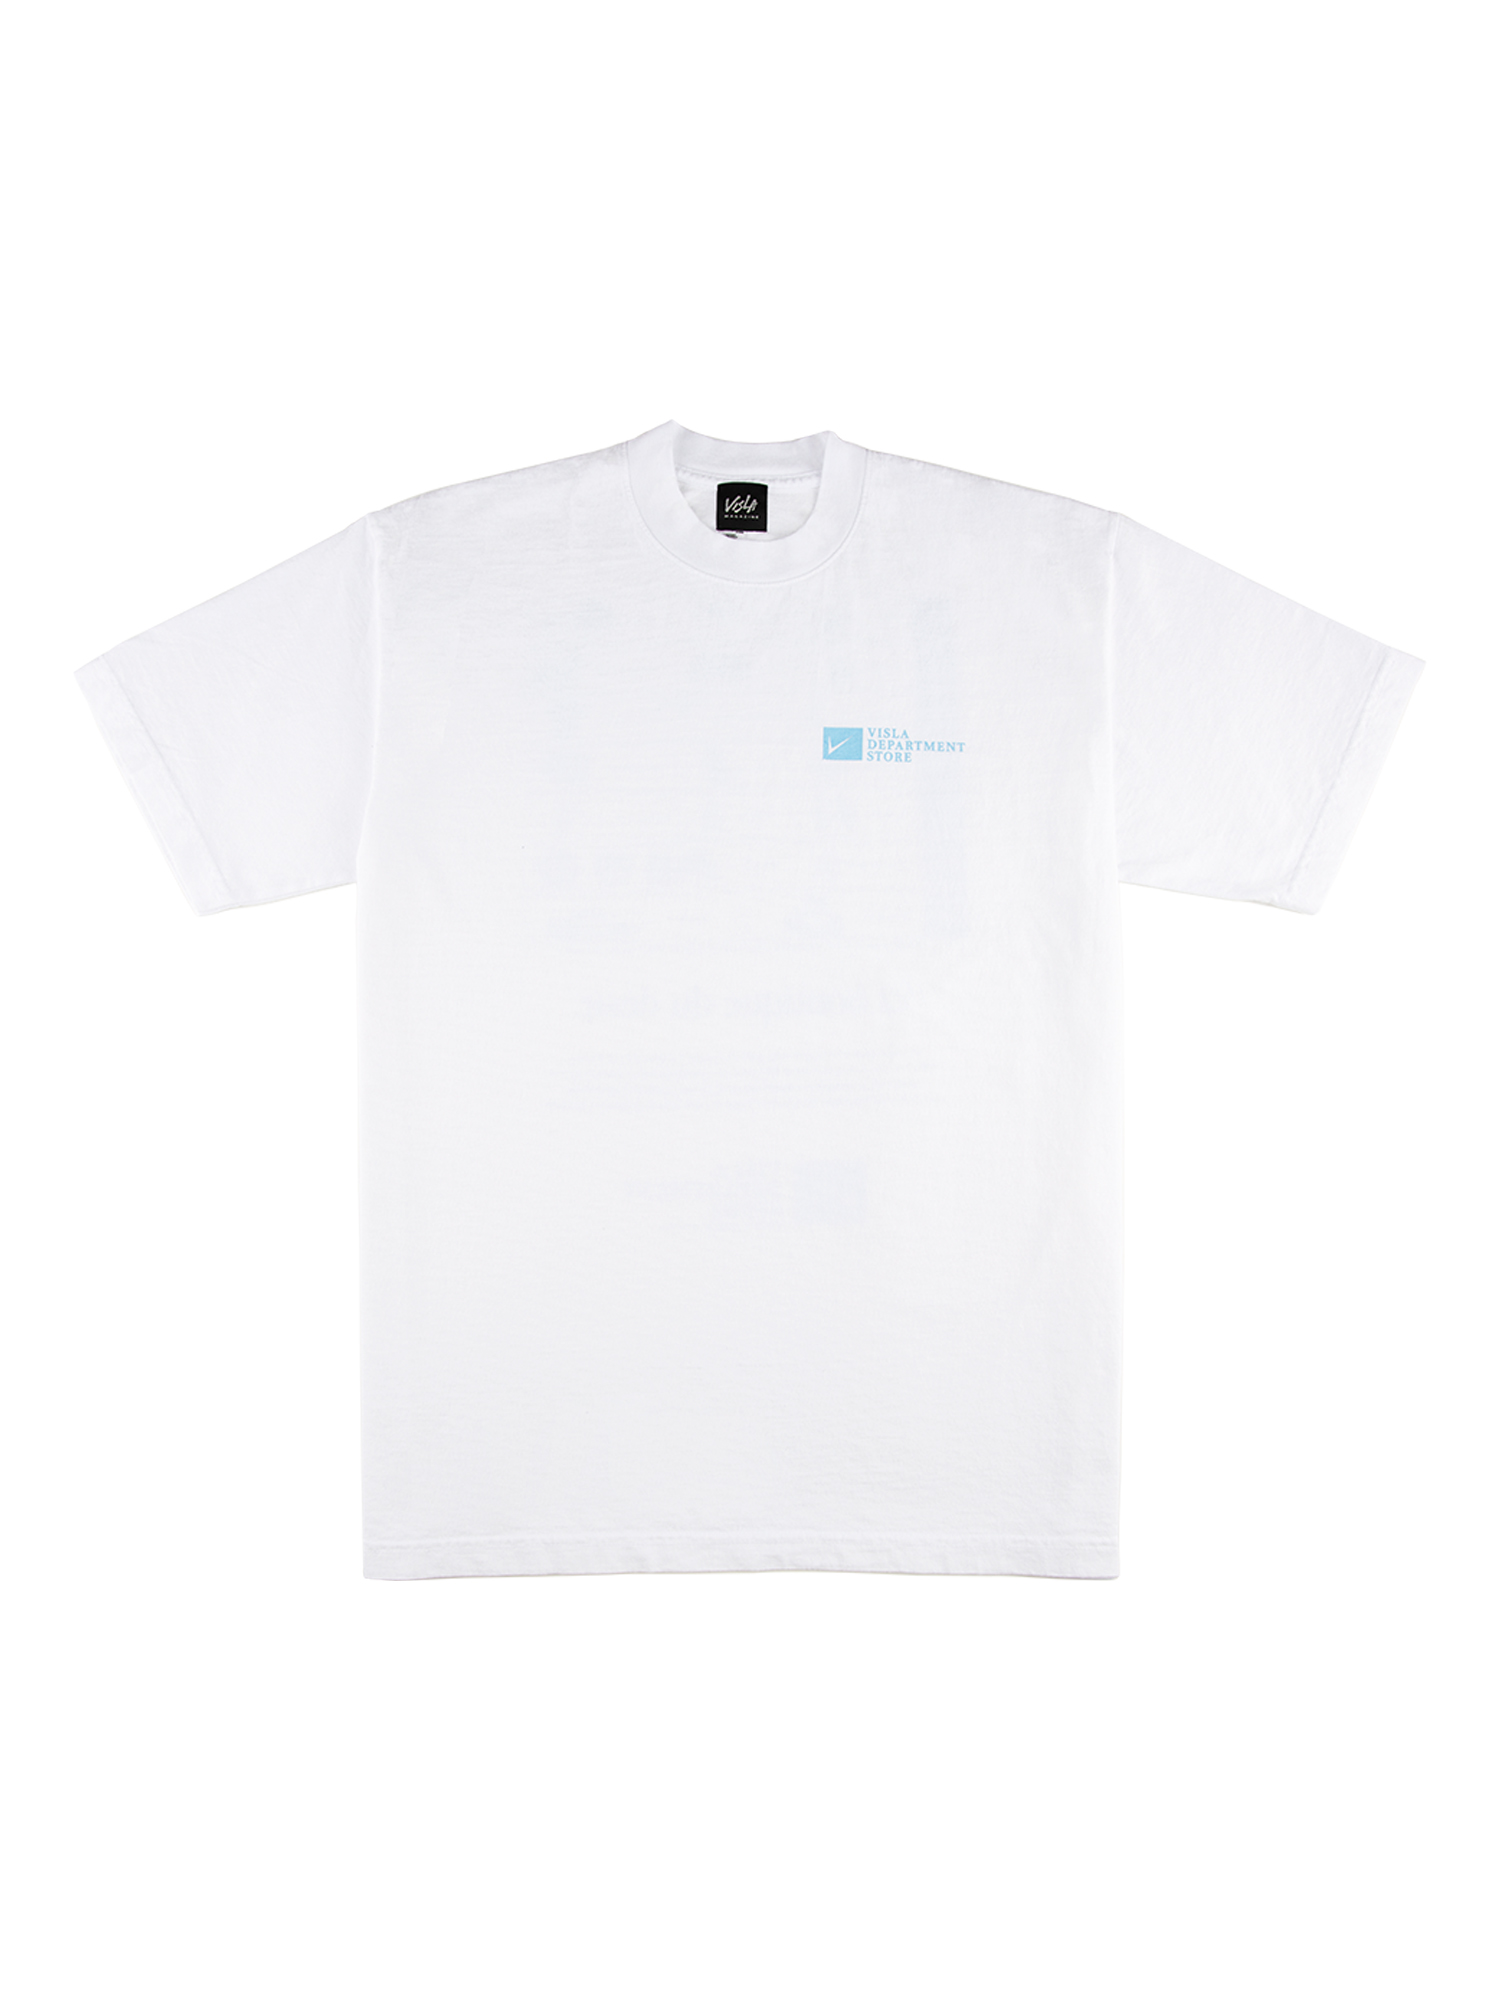 VDS Opening Anniversary T-Shirt - White / Sky blue